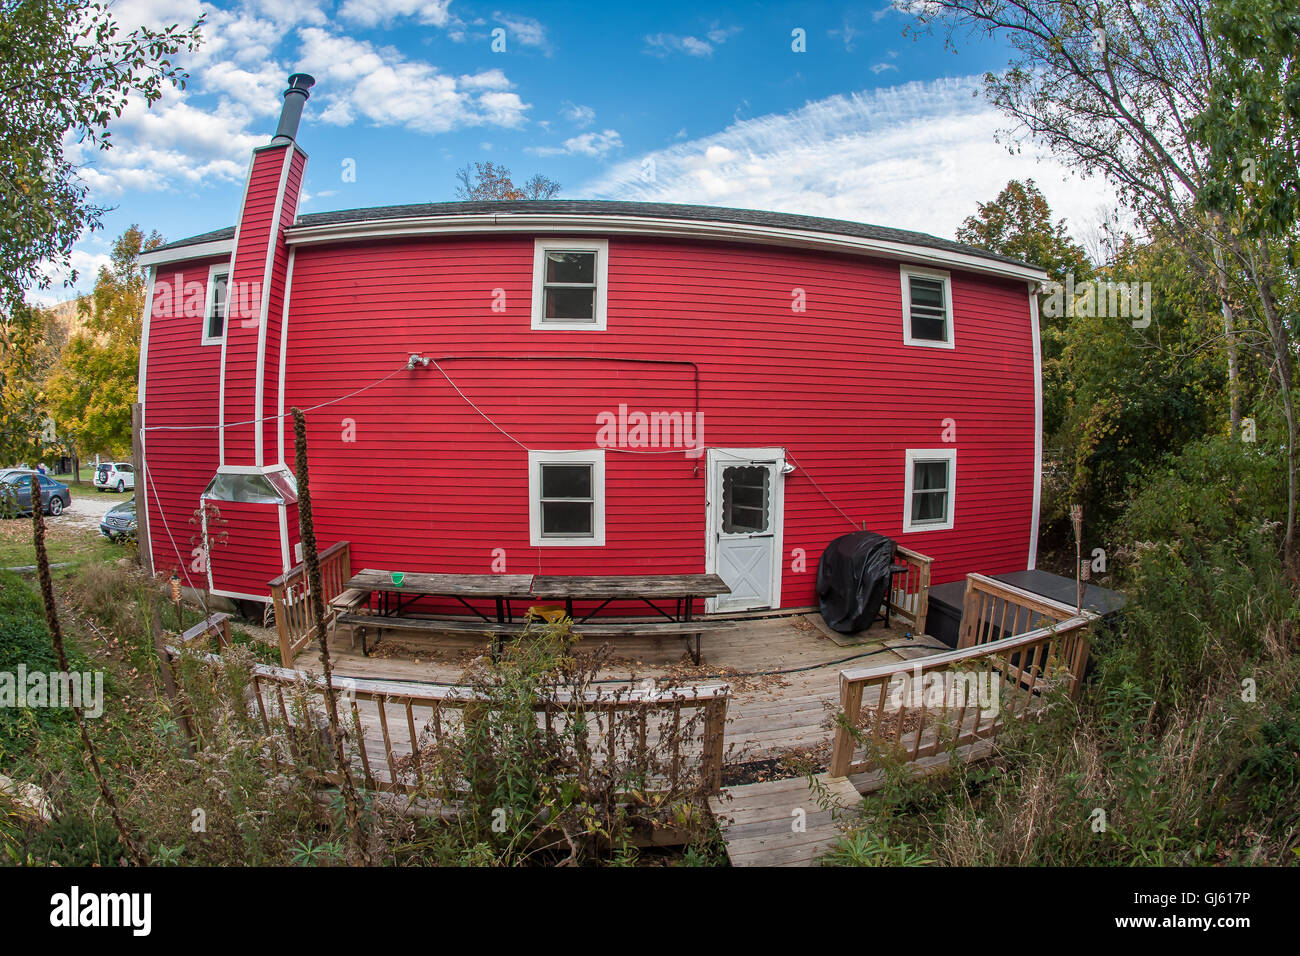 Una casa roja en Vermont, visto a través de un lente de ojo de pez. Foto de stock